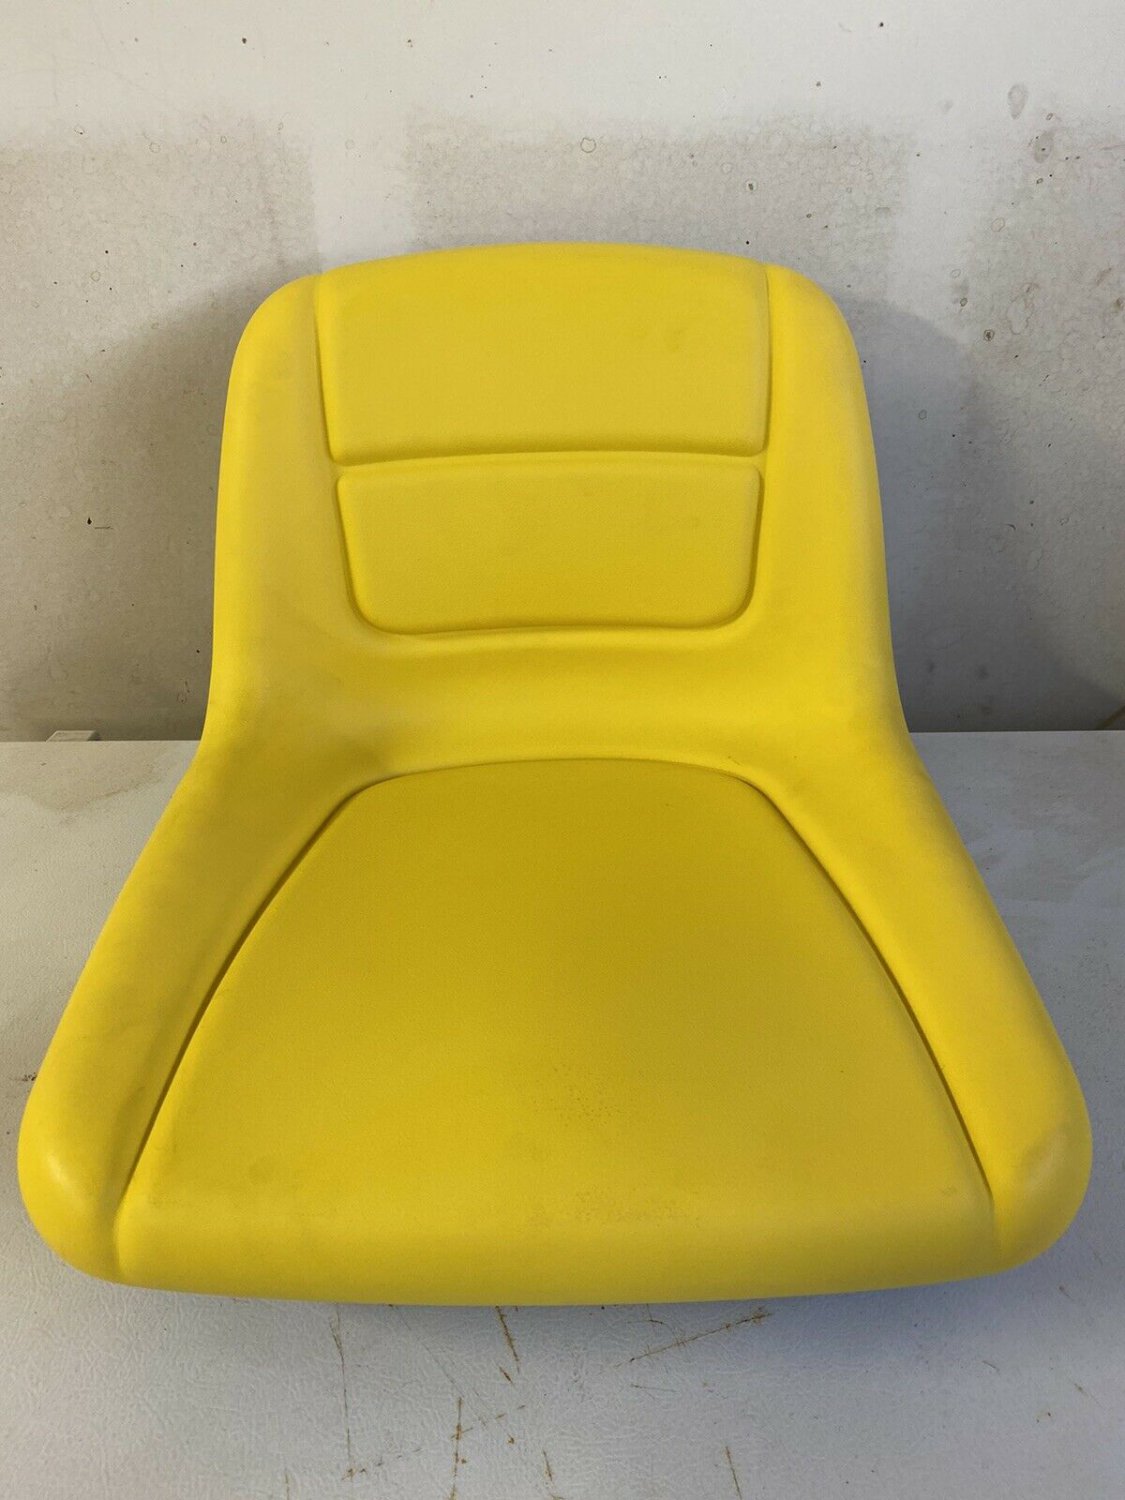 John Deere Mower Seat NEW Fits L111 L118 L120 L130 L135 L145 NEW Replacement Seat For John Deere L110